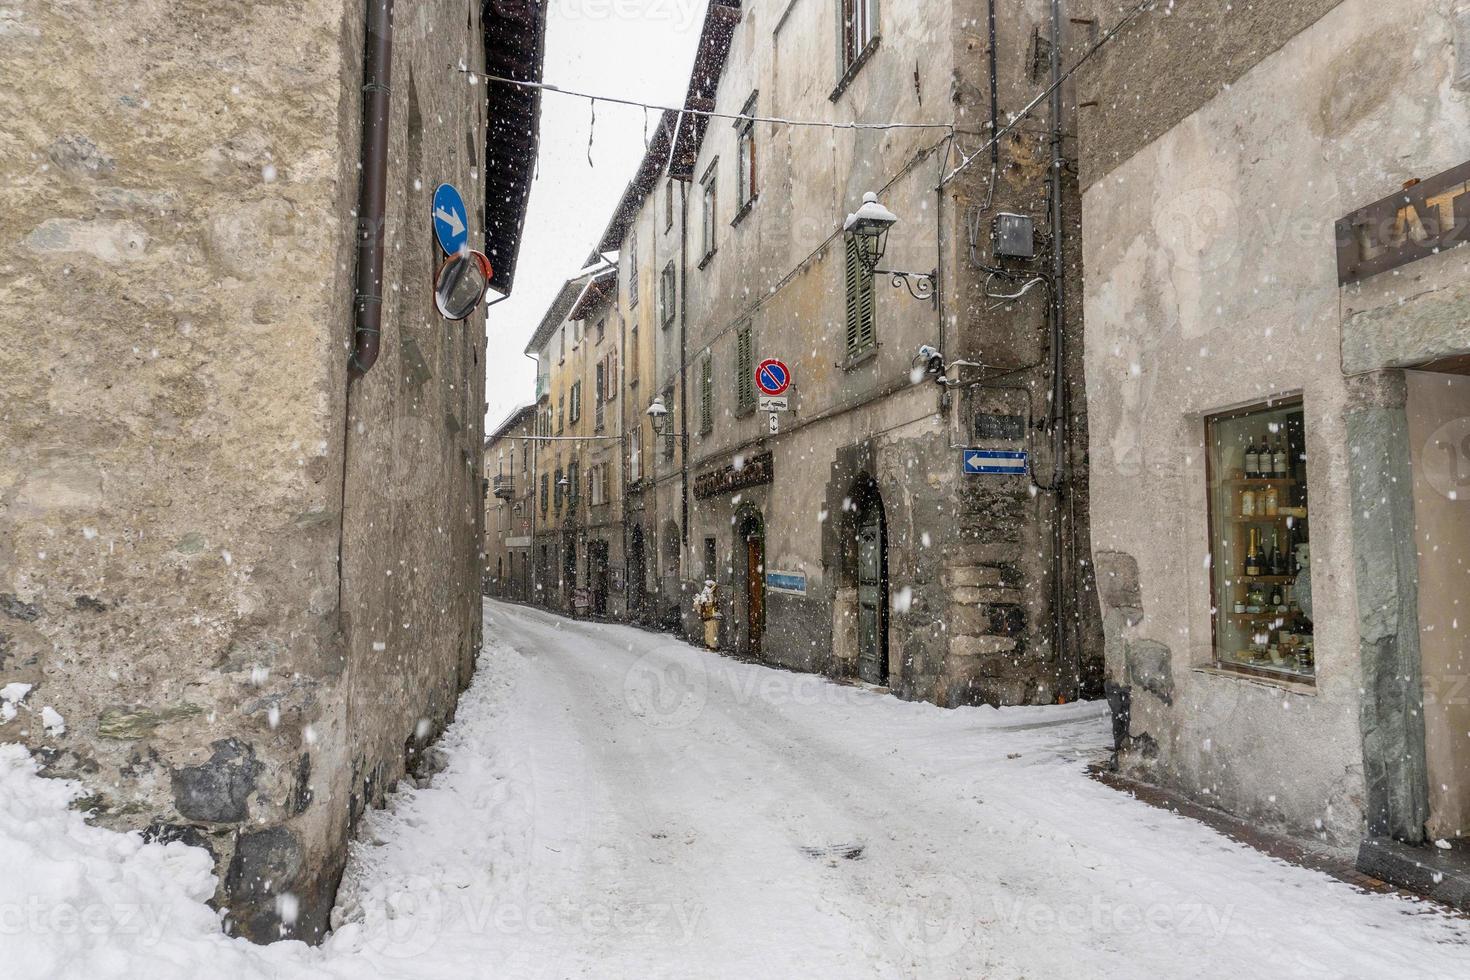 bormio medievale villaggio valtellinese Italia sotto il neve nel inverno foto